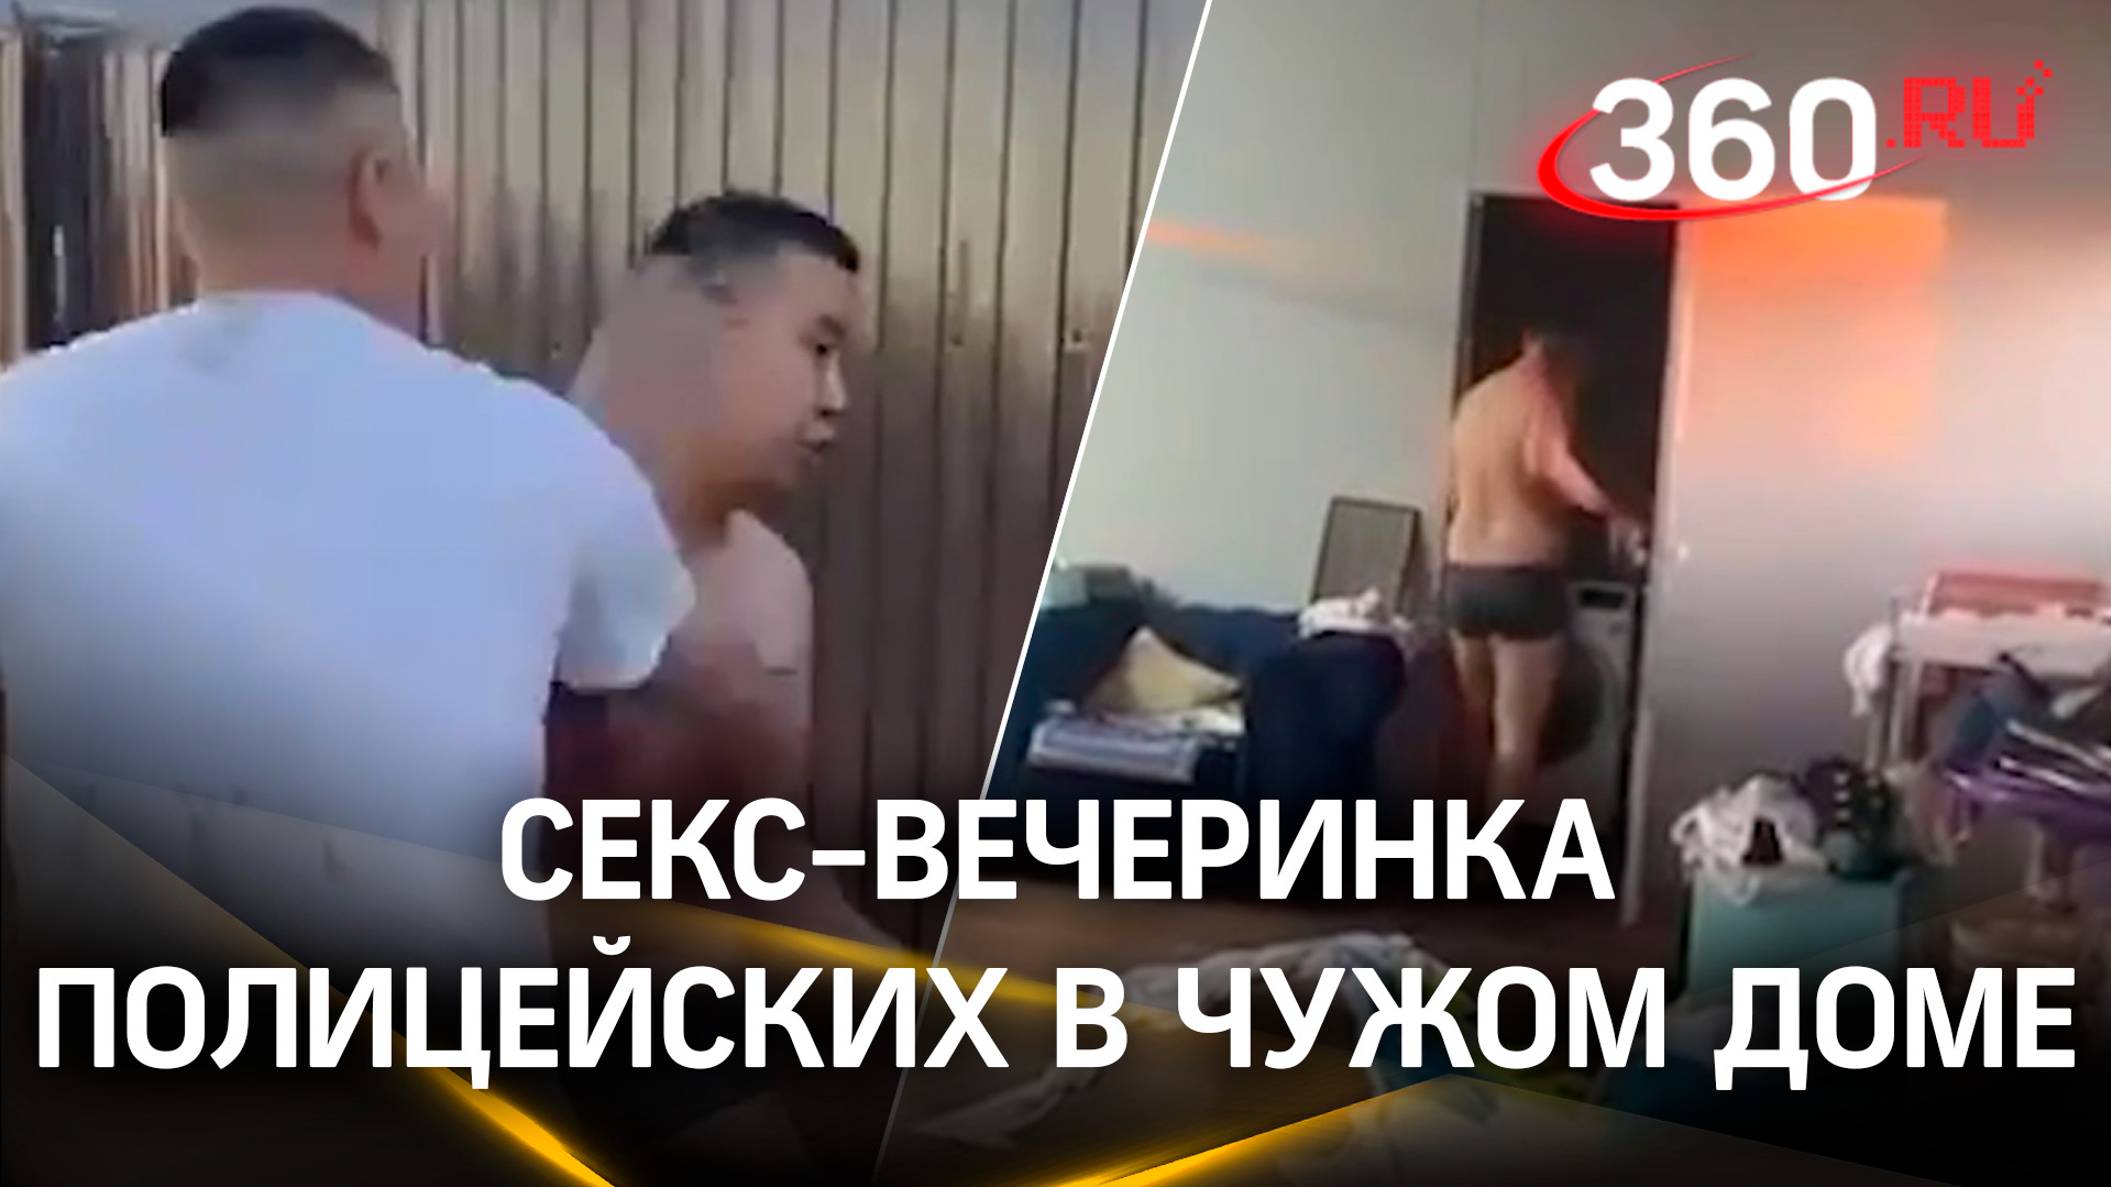 В Якутии полицейские отгуляли на корпоративе и решили продолжить на интимной вечеринке в чужом доме